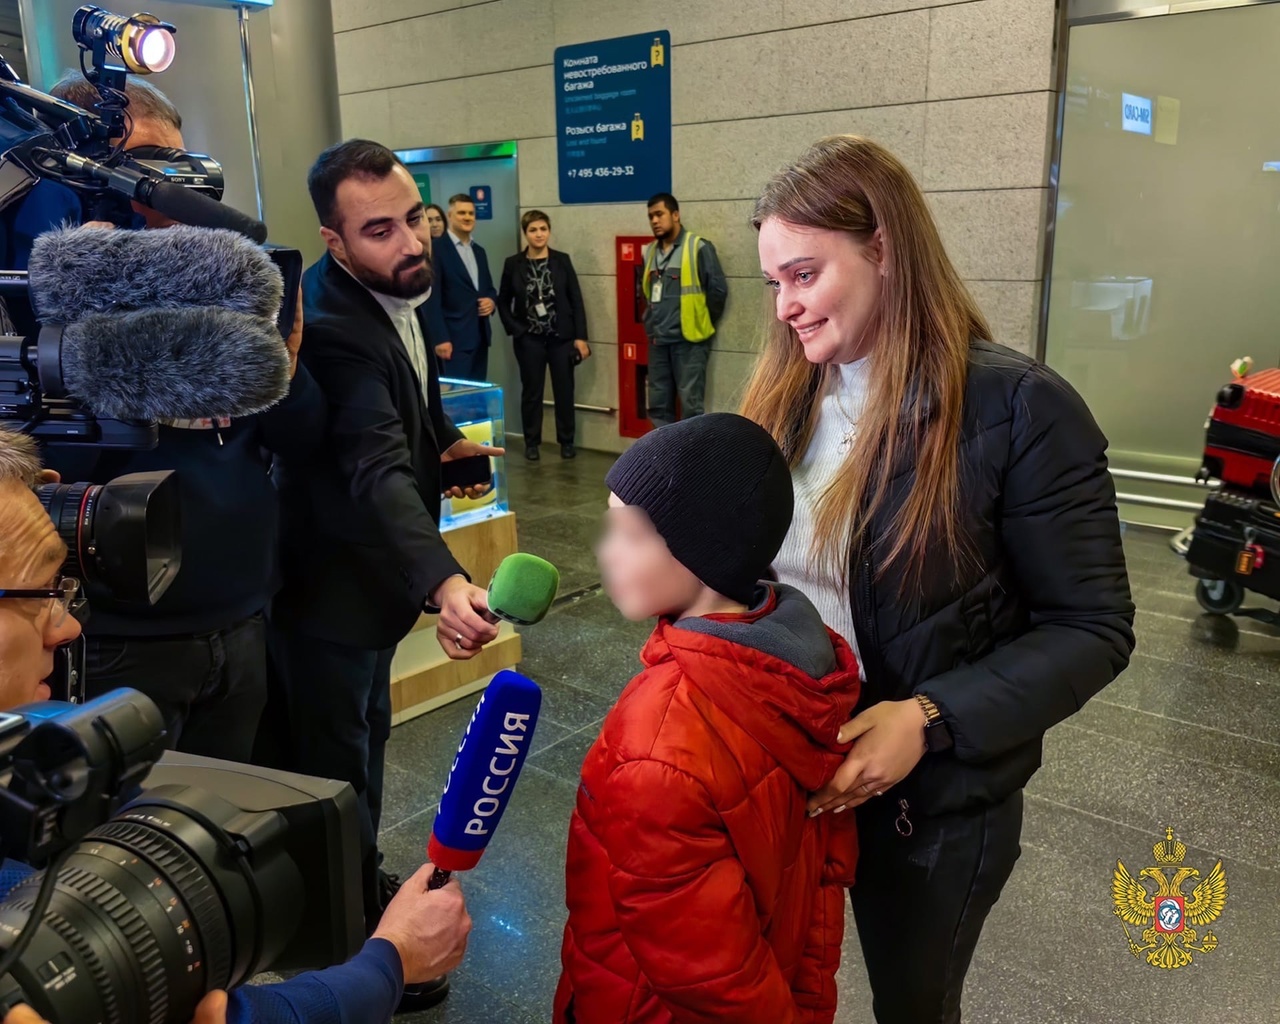 Ярославна четыре года пыталась вернуть своего ребенка домой с Украины